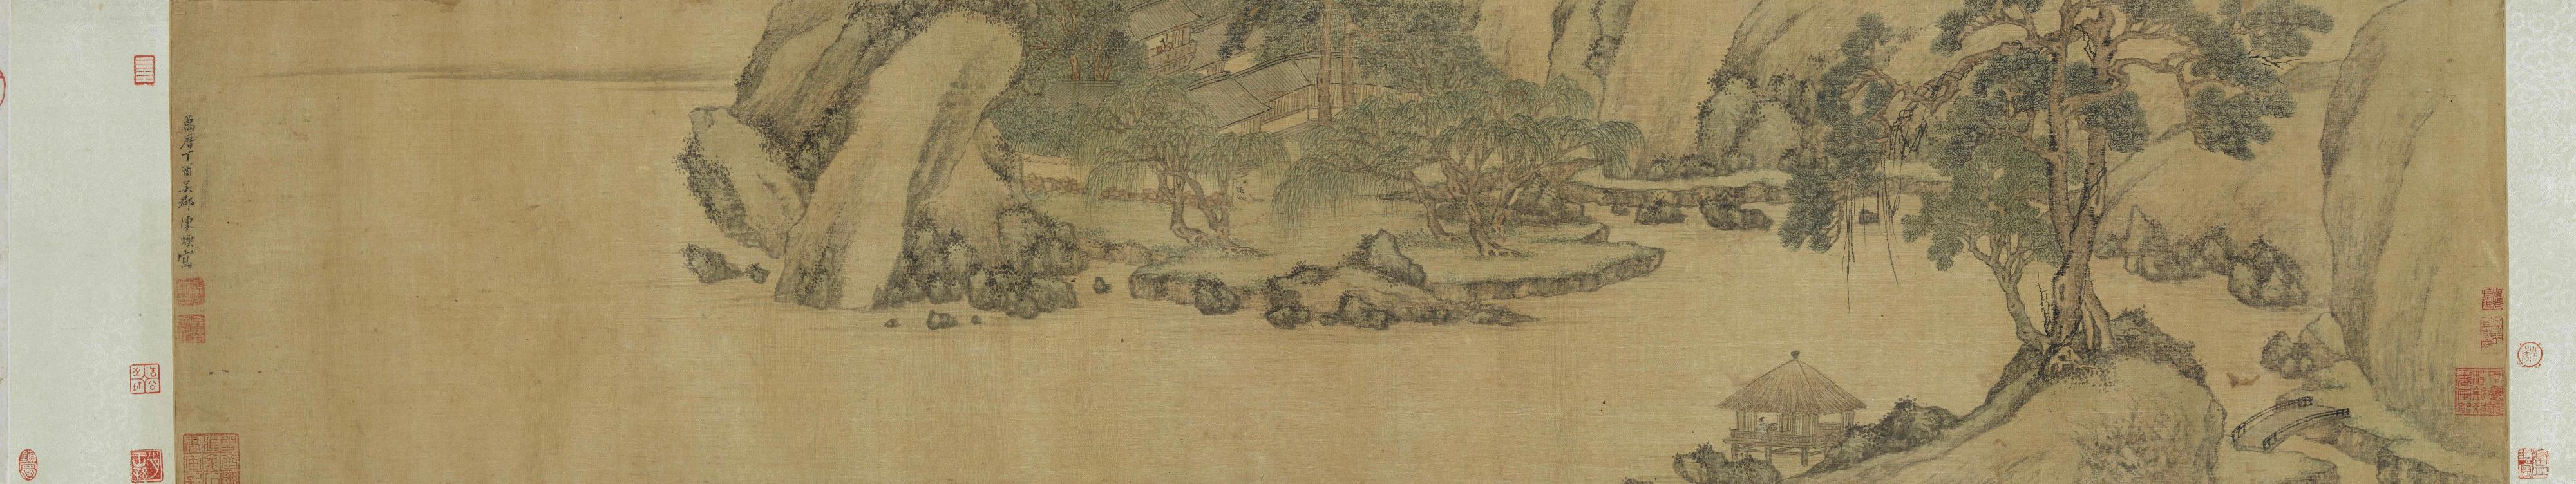 香港藝術館舉辦展覽「另眼相看──中國書畫的裝裱與保護」，透過藝術與科學的角度，分析和拆解中國書畫，讓市民窺探博物館幕後的修復和保護工作。展覽今日（三月二十二日）起在香港藝術館展出。圖示陳煥（活躍於約1573－1620）的《五柳居圖》。